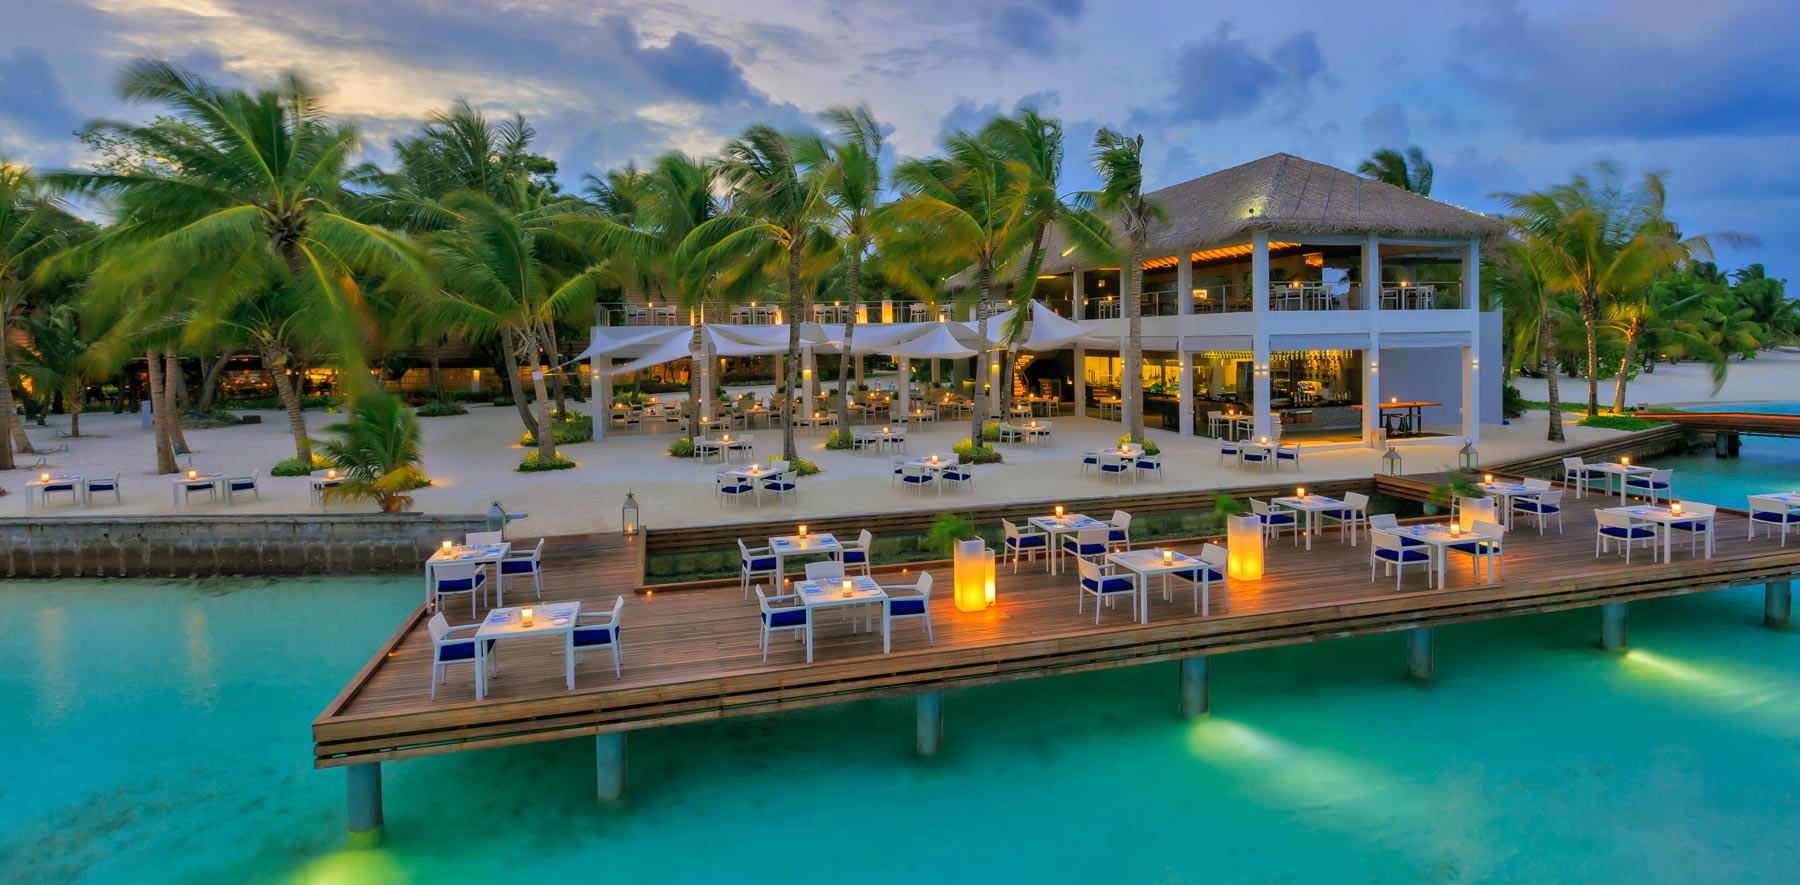 افضل الفنادق المتميزه في السعر في المالديف (4)